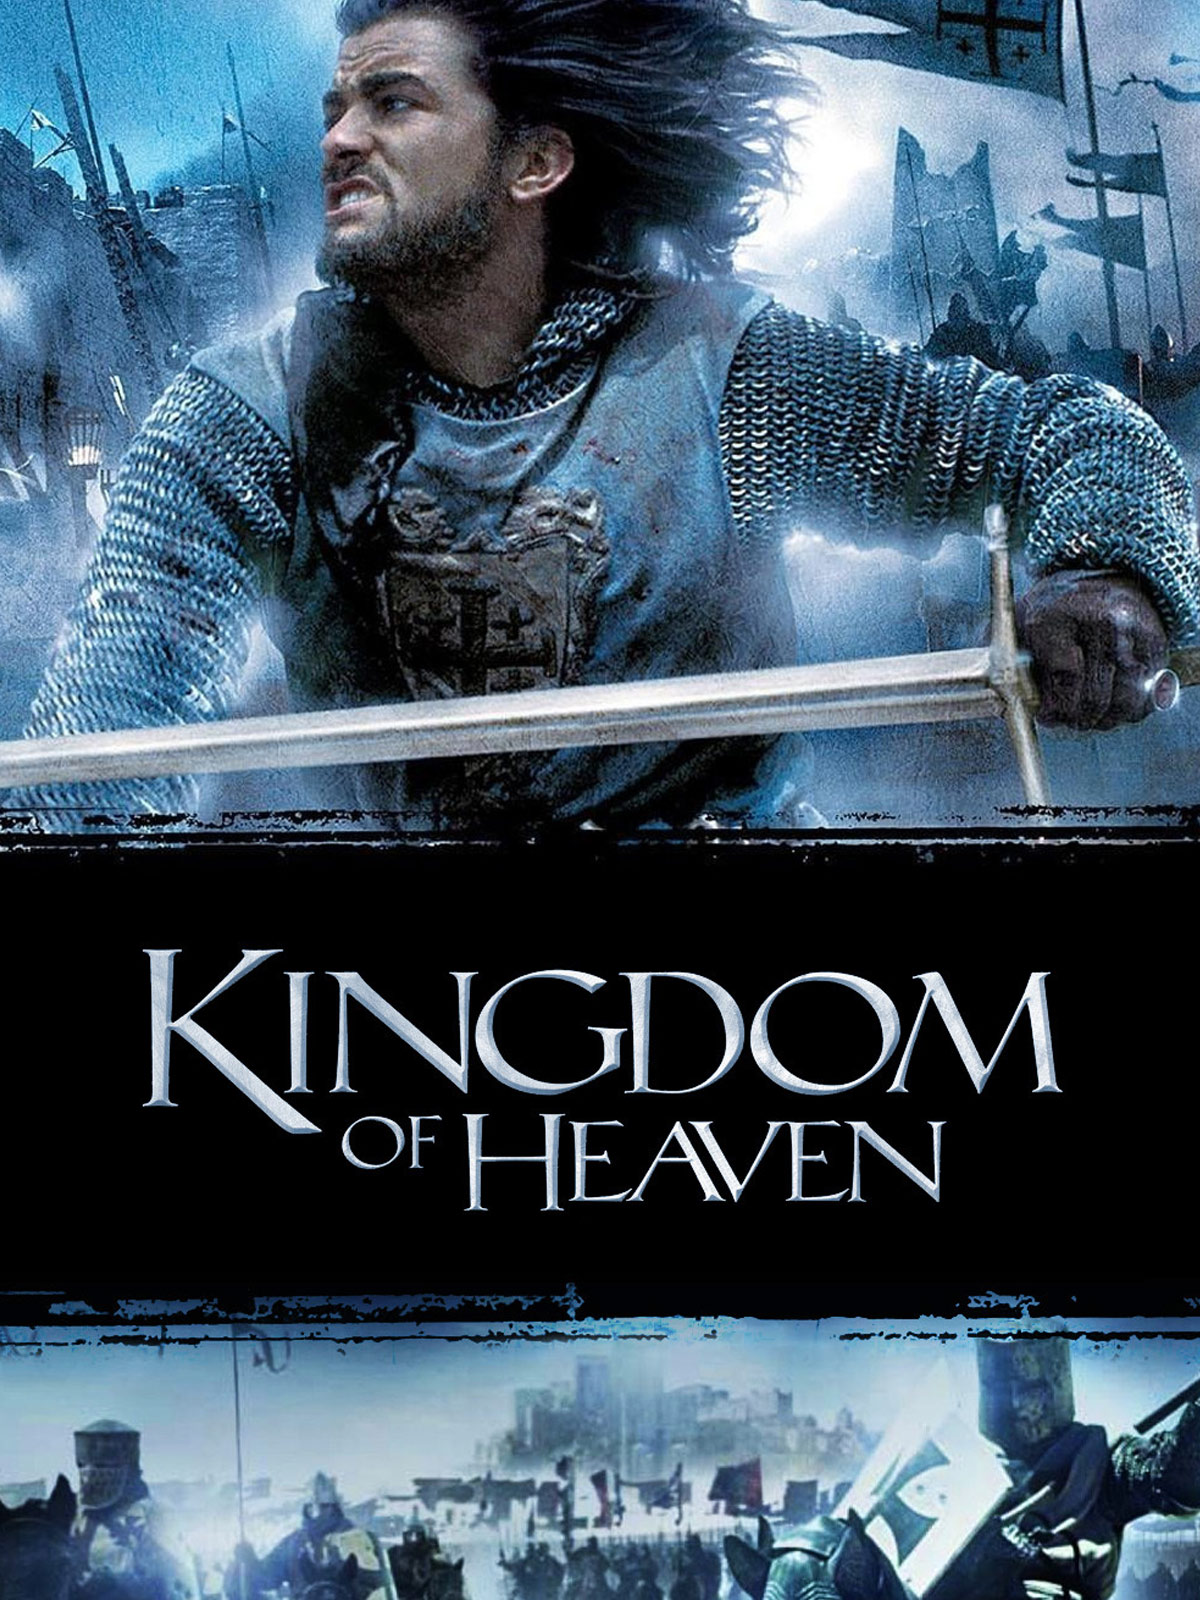 Kingdom of heaven. Царство небесное Kingdom of Heaven (2005). Царство небесное фильм 2005 poster. Царство небесное фильм Постер. Постер Kingdom of Heaven 2005.